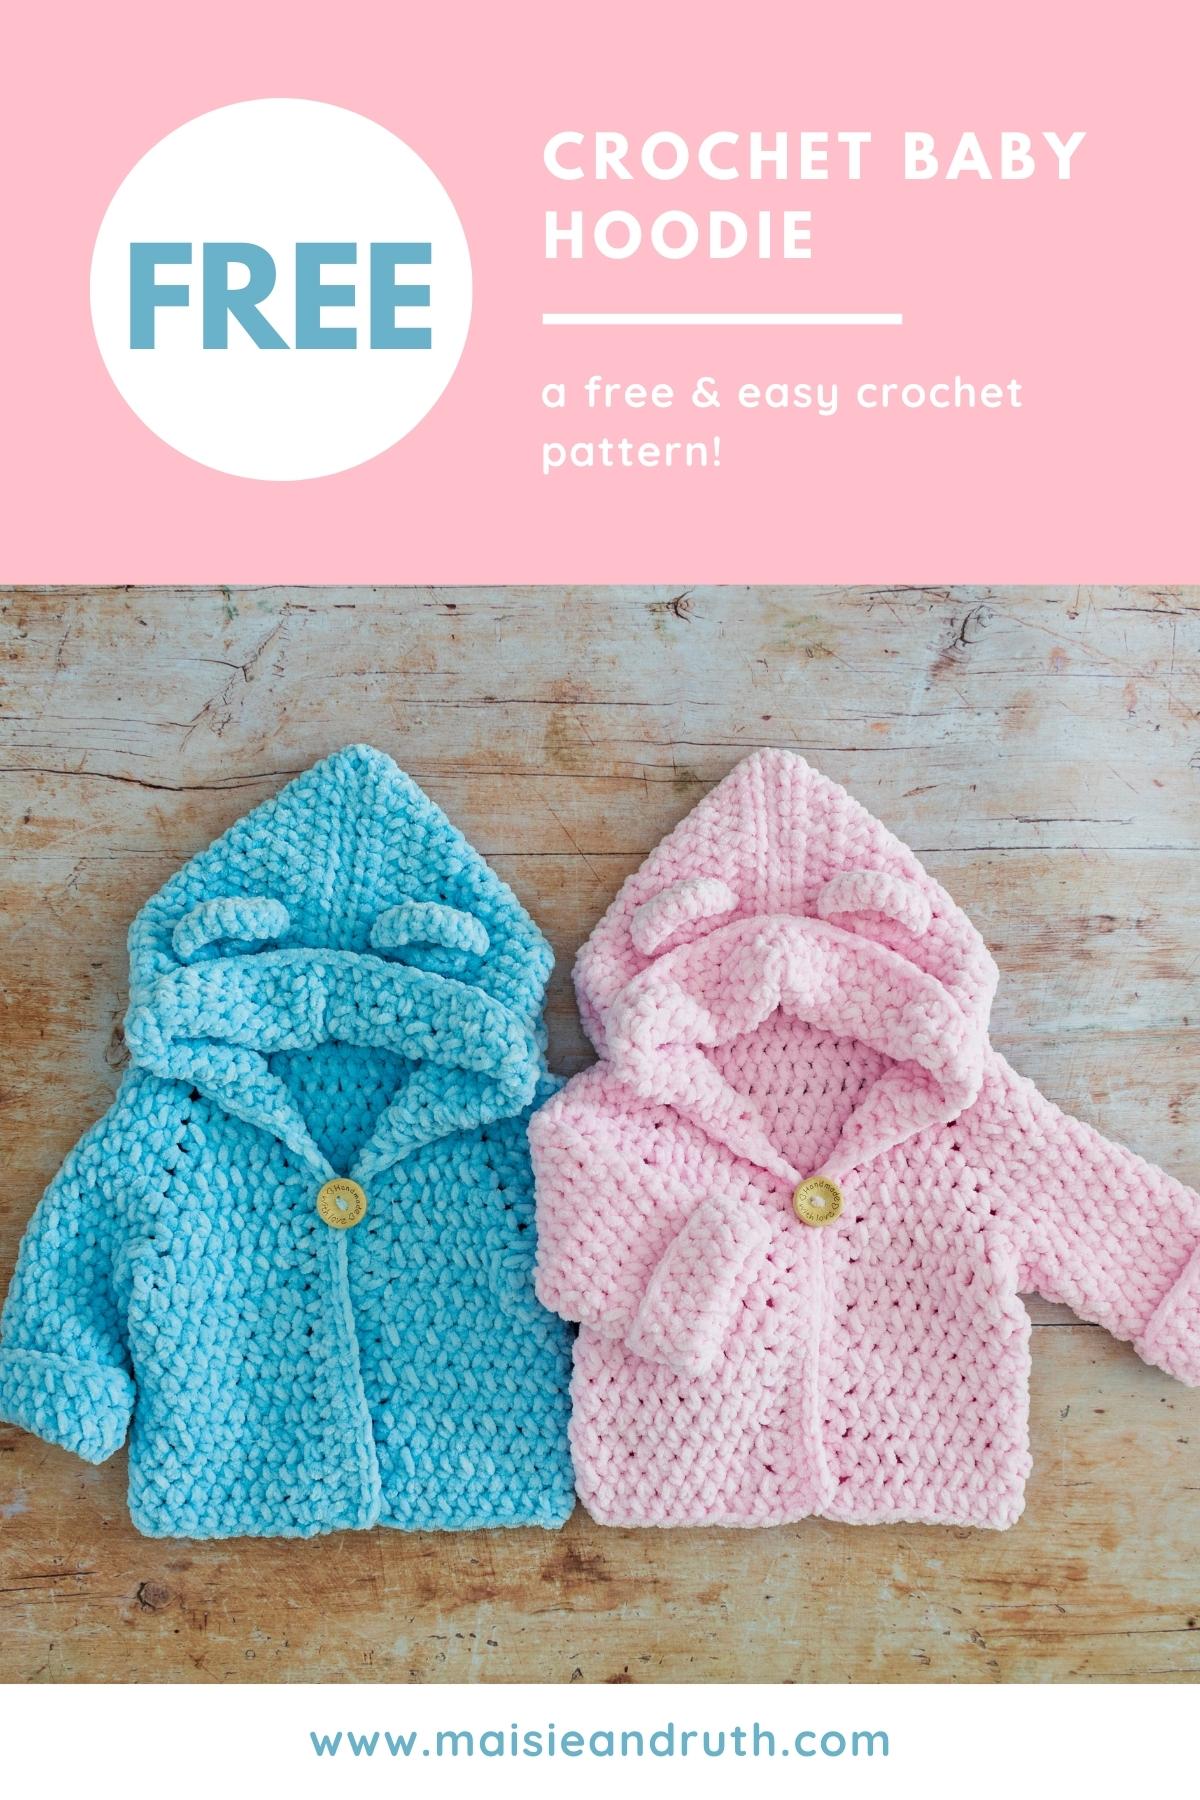 Crochet Baby Hoodie Free Crochet Pattern Pin 1